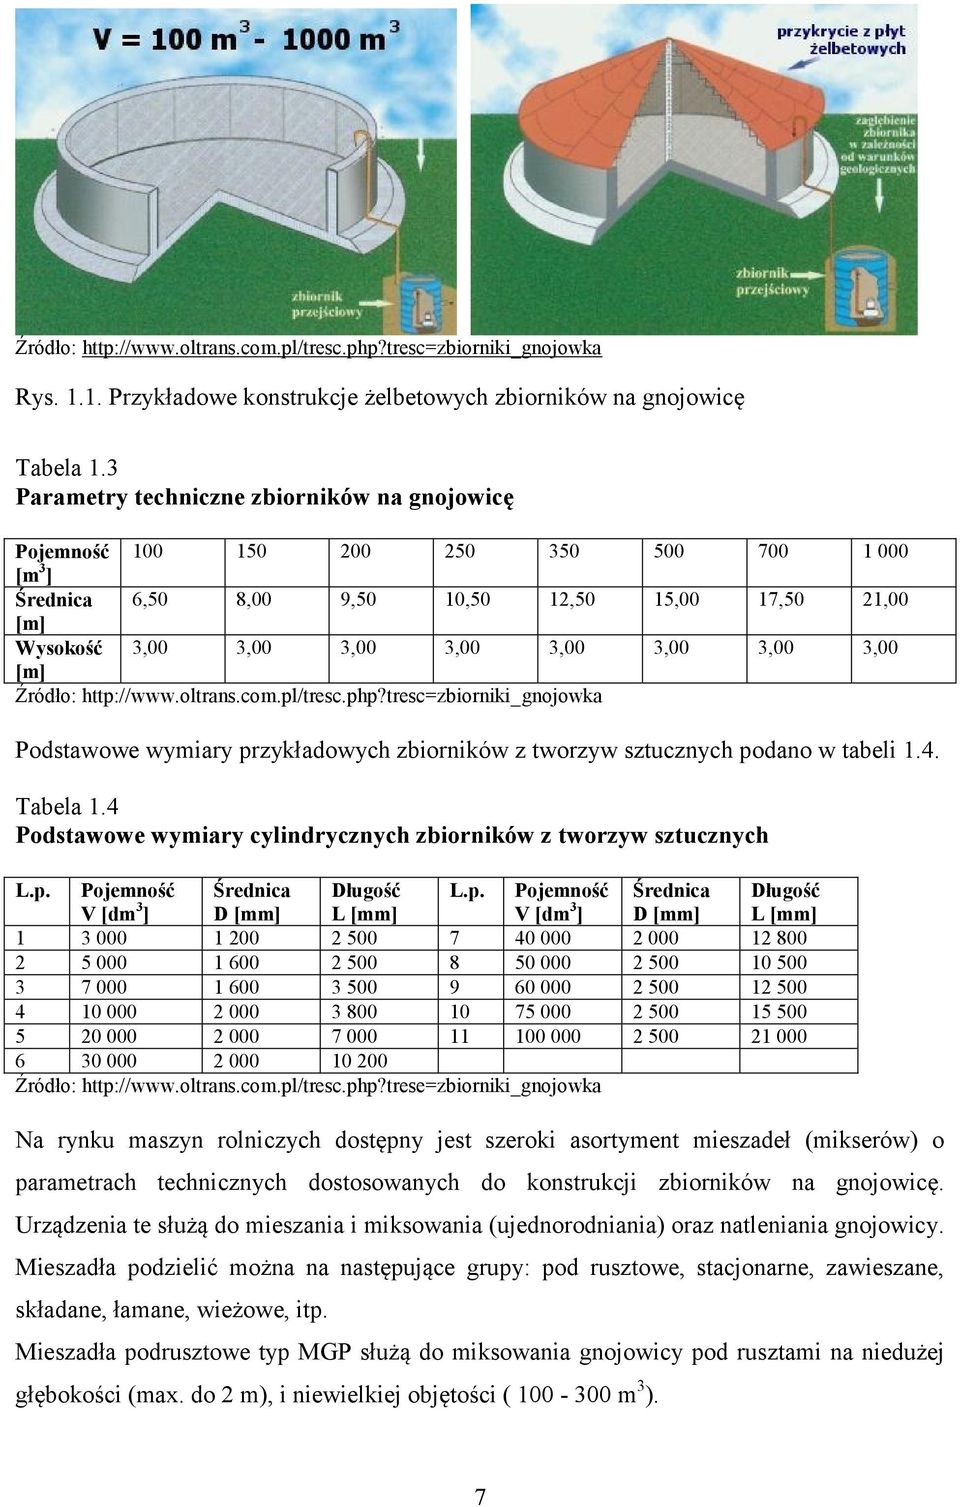 3,00 [m] Źródło: http://www.oltrans.com.pl/tresc.php?tresc=zbiorniki_gnojowka Podstawowe wymiary przykładowych zbiorników z tworzyw sztucznych podano w tabeli 1.4. Tabela 1.